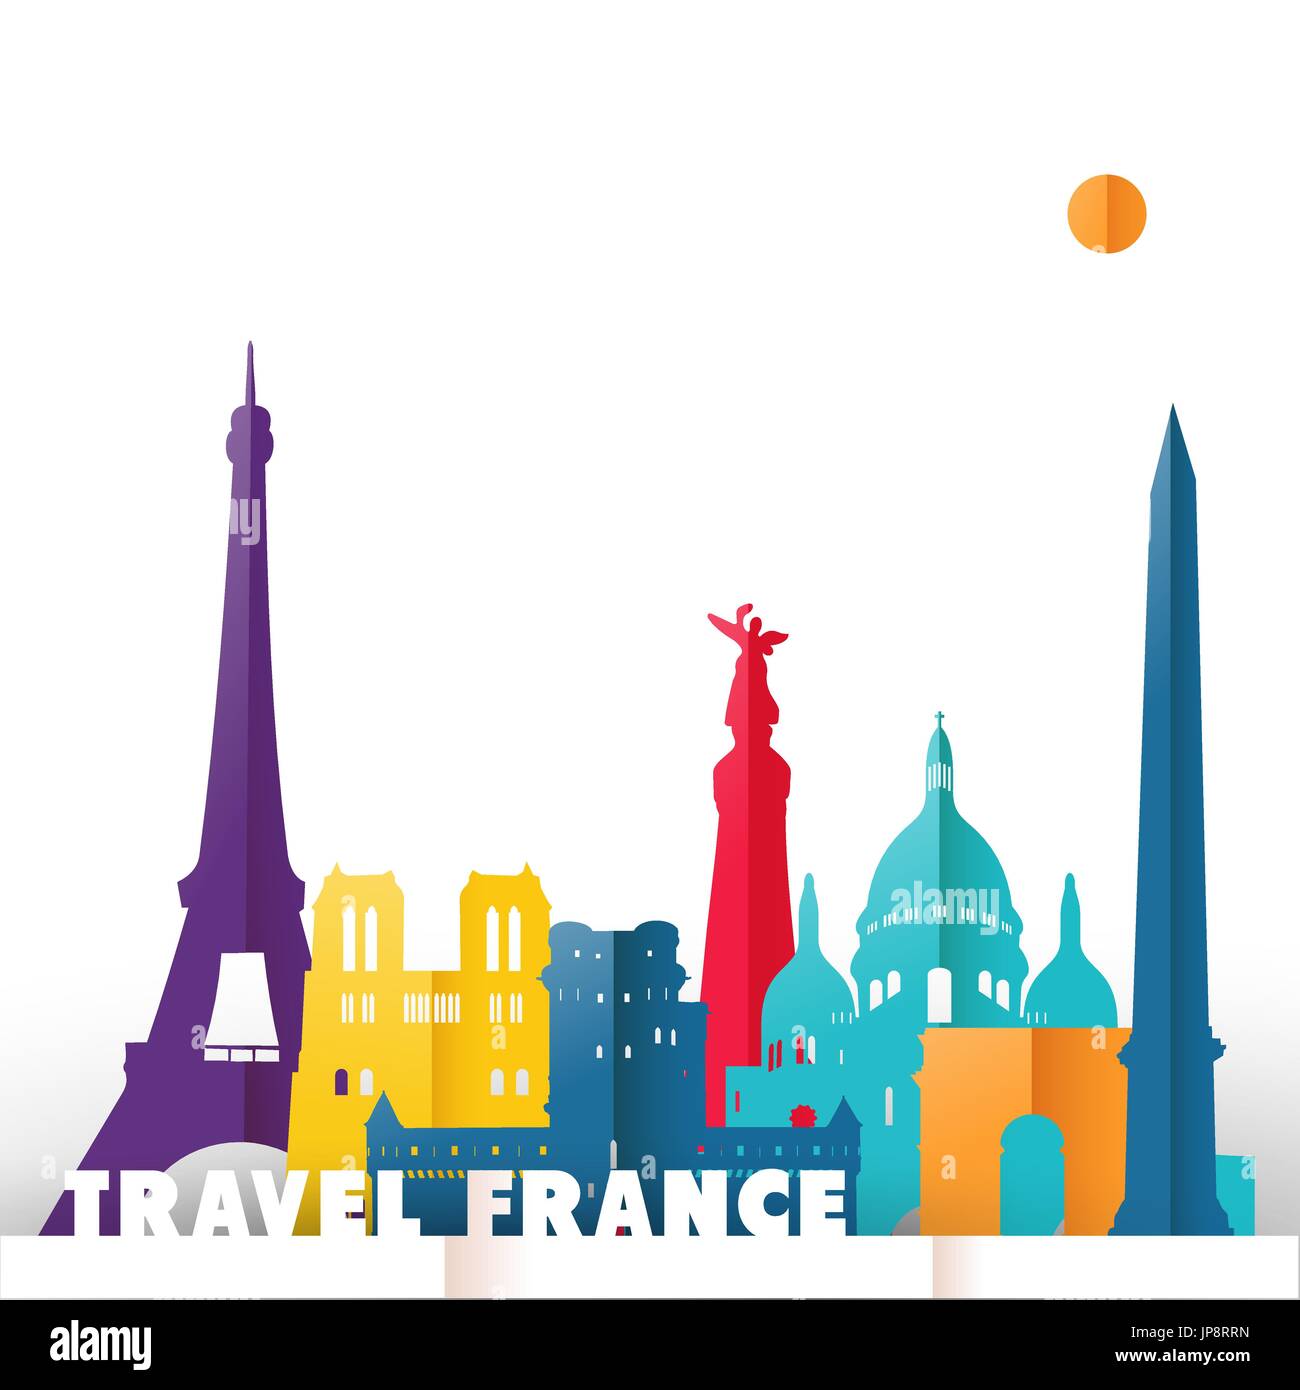 Billet France concept illustration sur papier, modèle de coupe de monde célèbre monuments de pays français. Comprend la tour Eiffel, de l'église Notre Dame, Arc de Triomphe Illustration de Vecteur